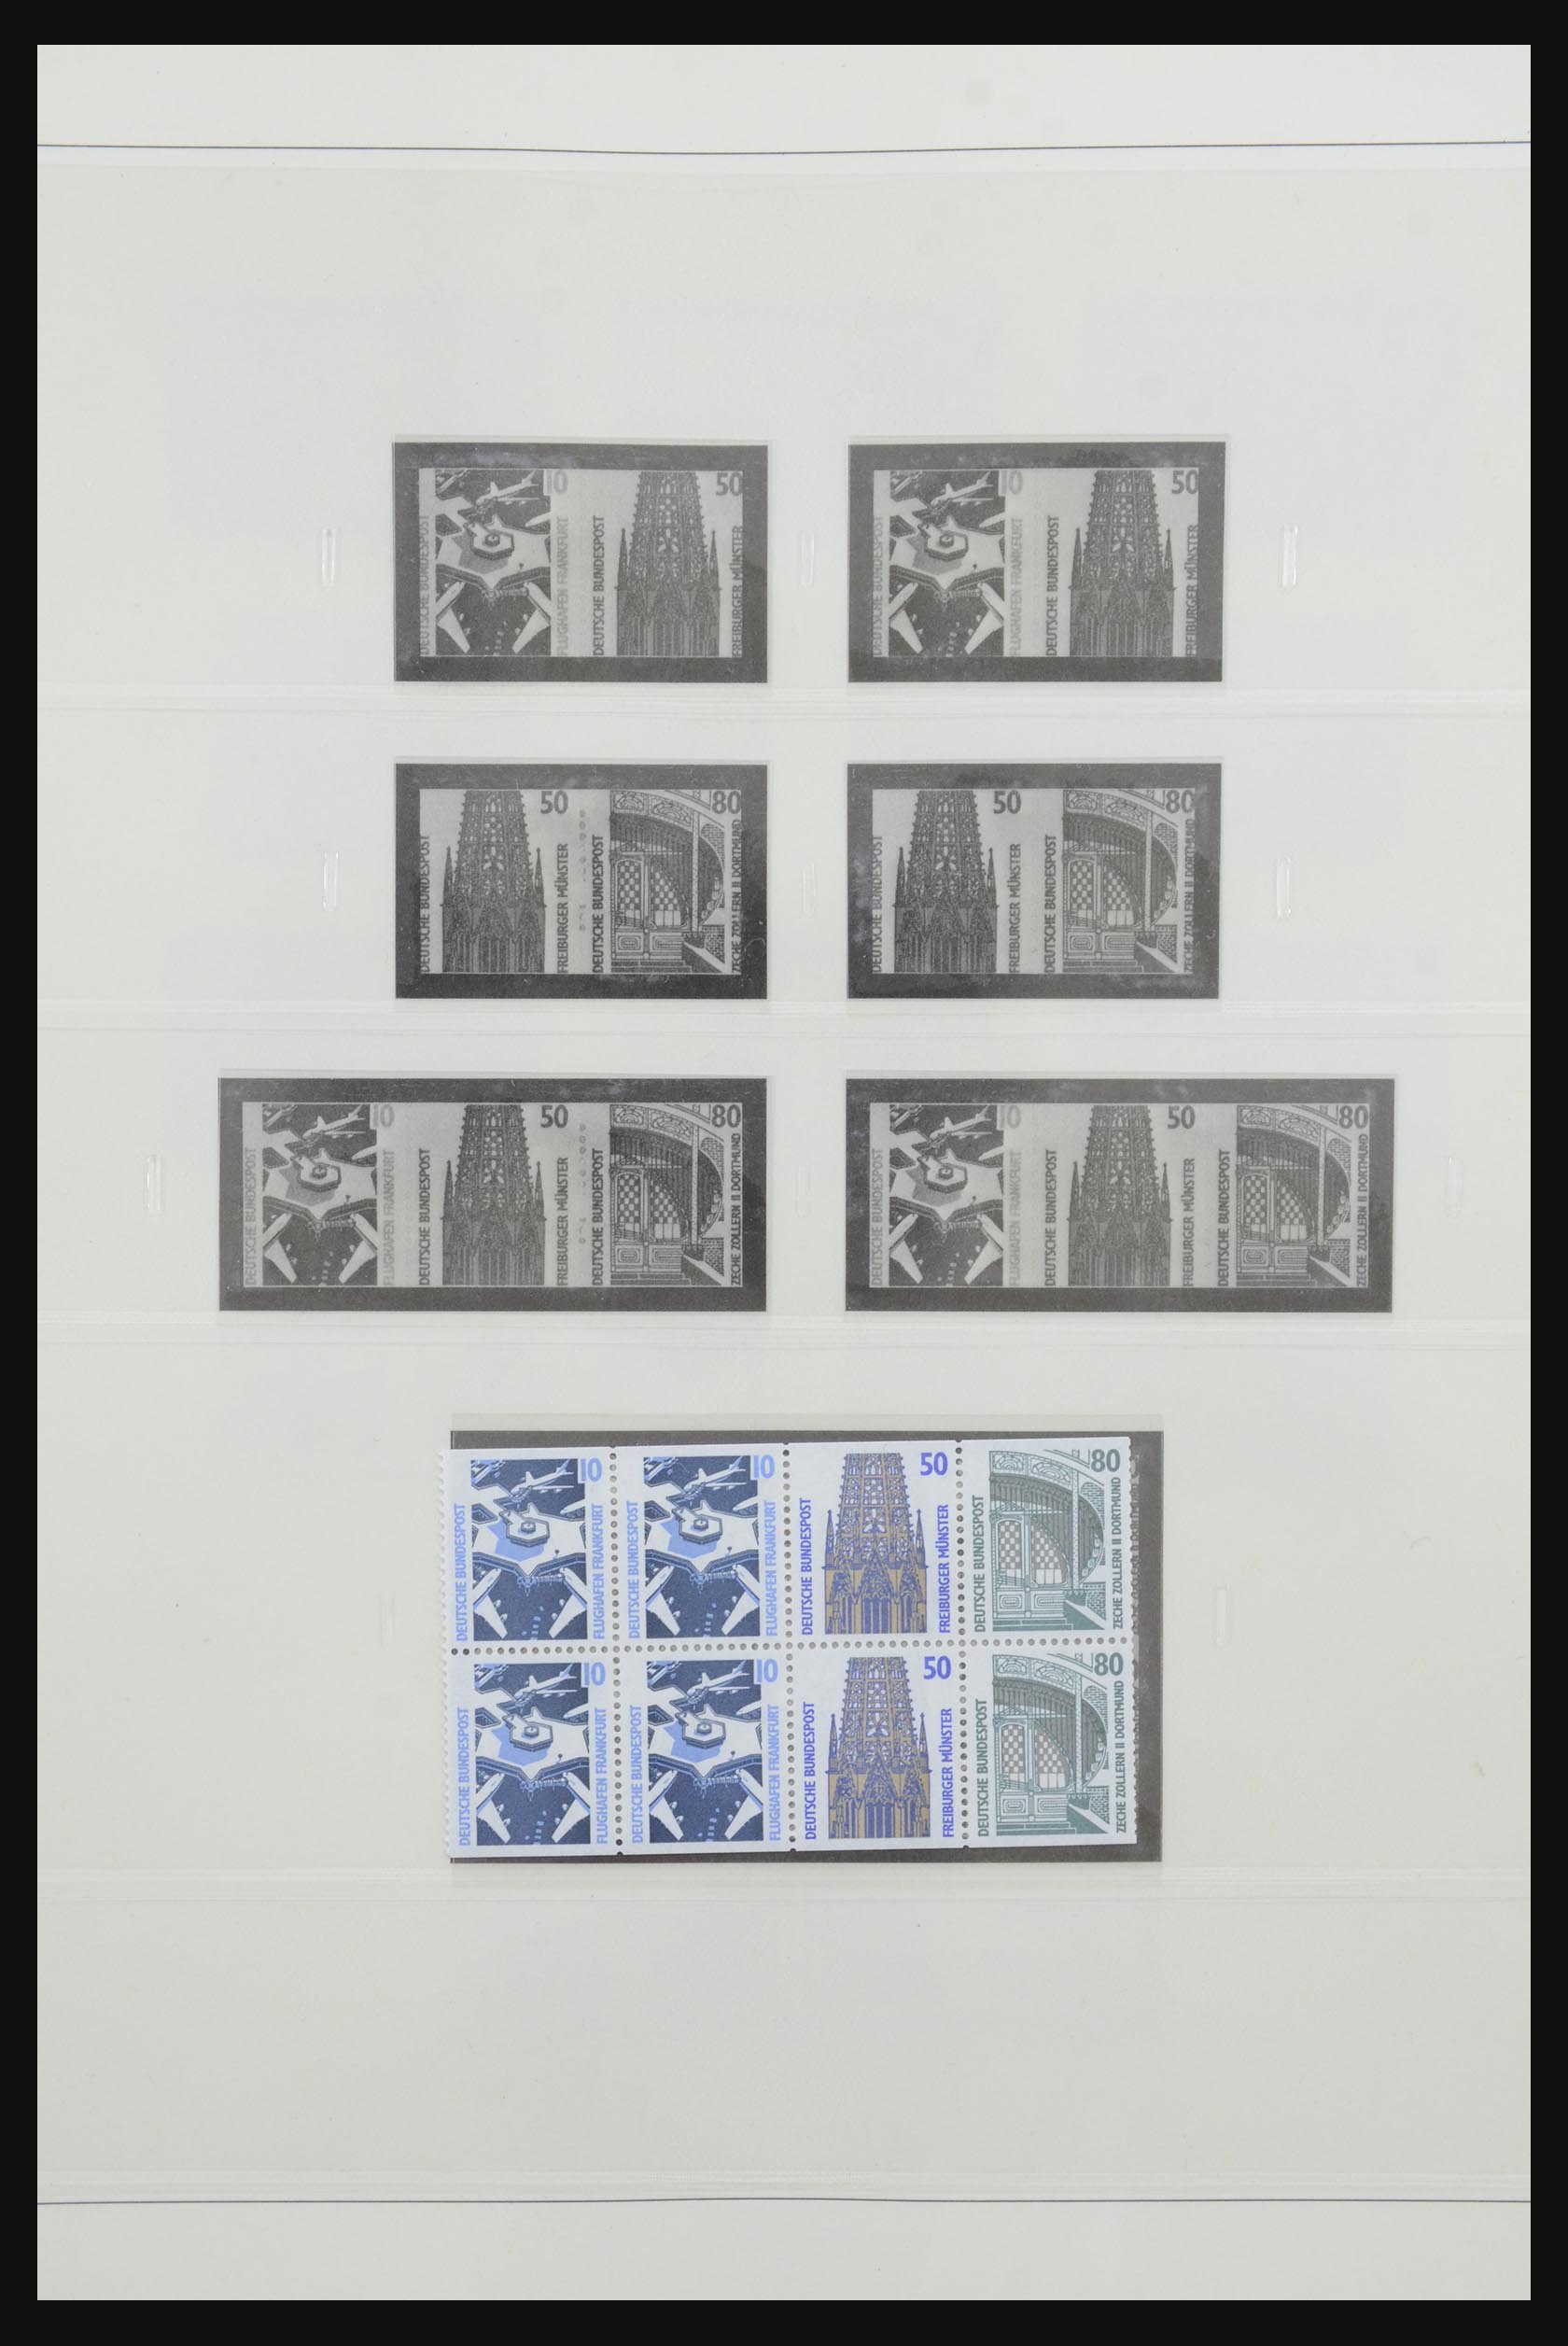 31842 069 - 31842 Bundespost combinations 1951-2003.